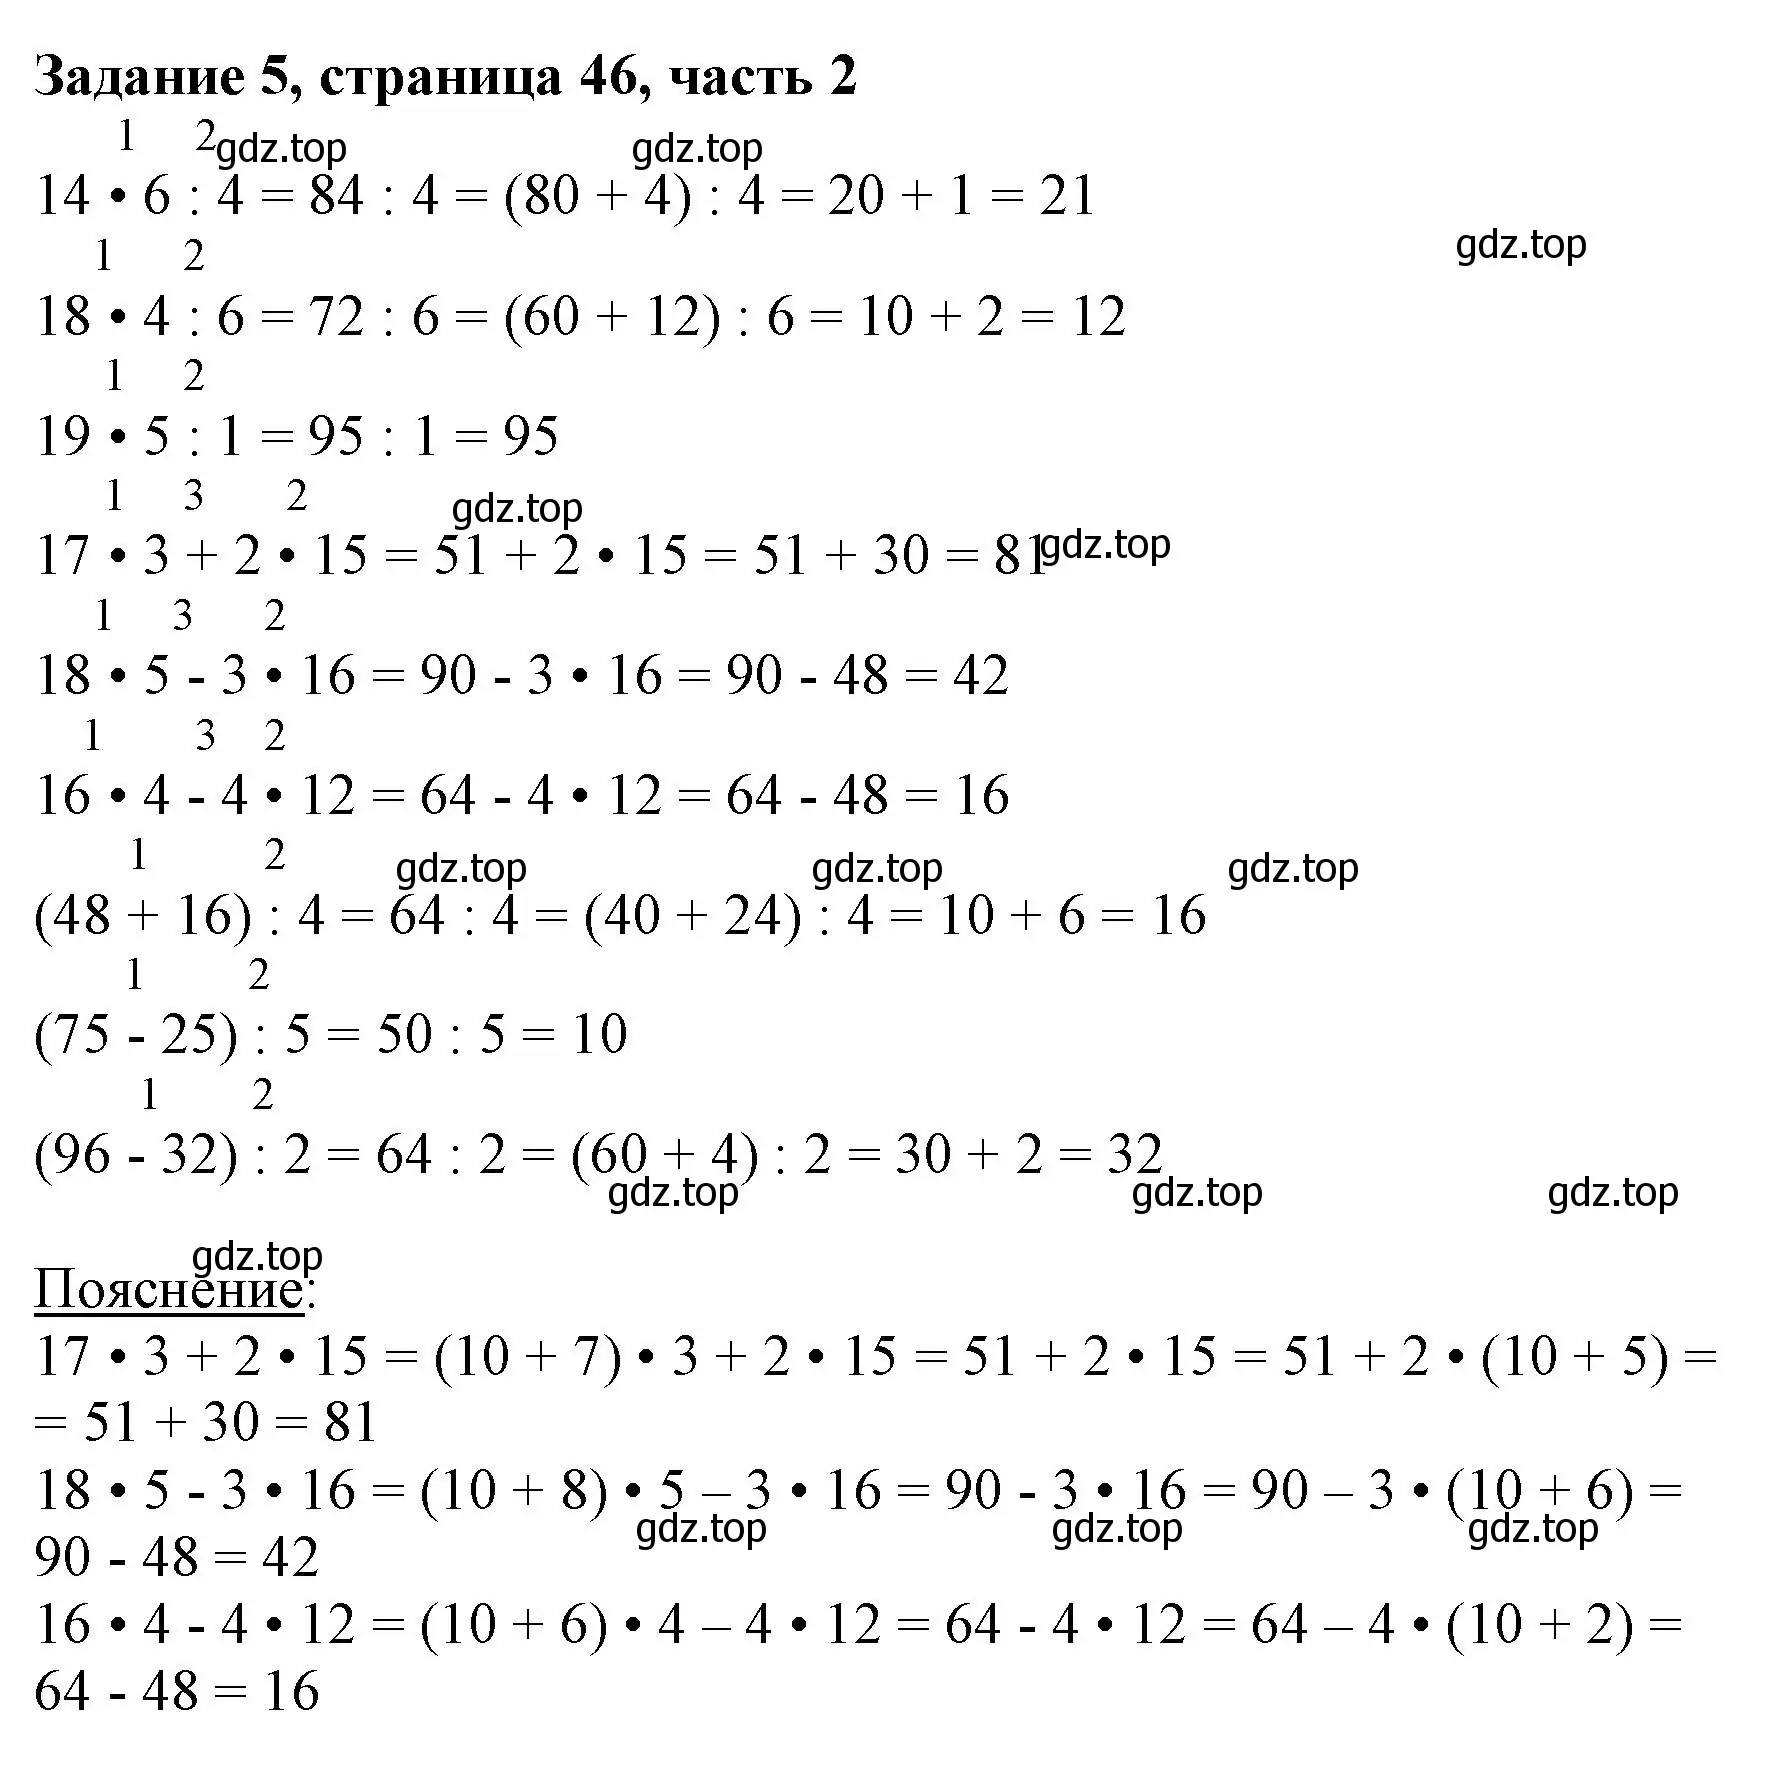 Решение номер 5 (страница 46) гдз по математике 3 класс Моро, Бантова, учебник 2 часть